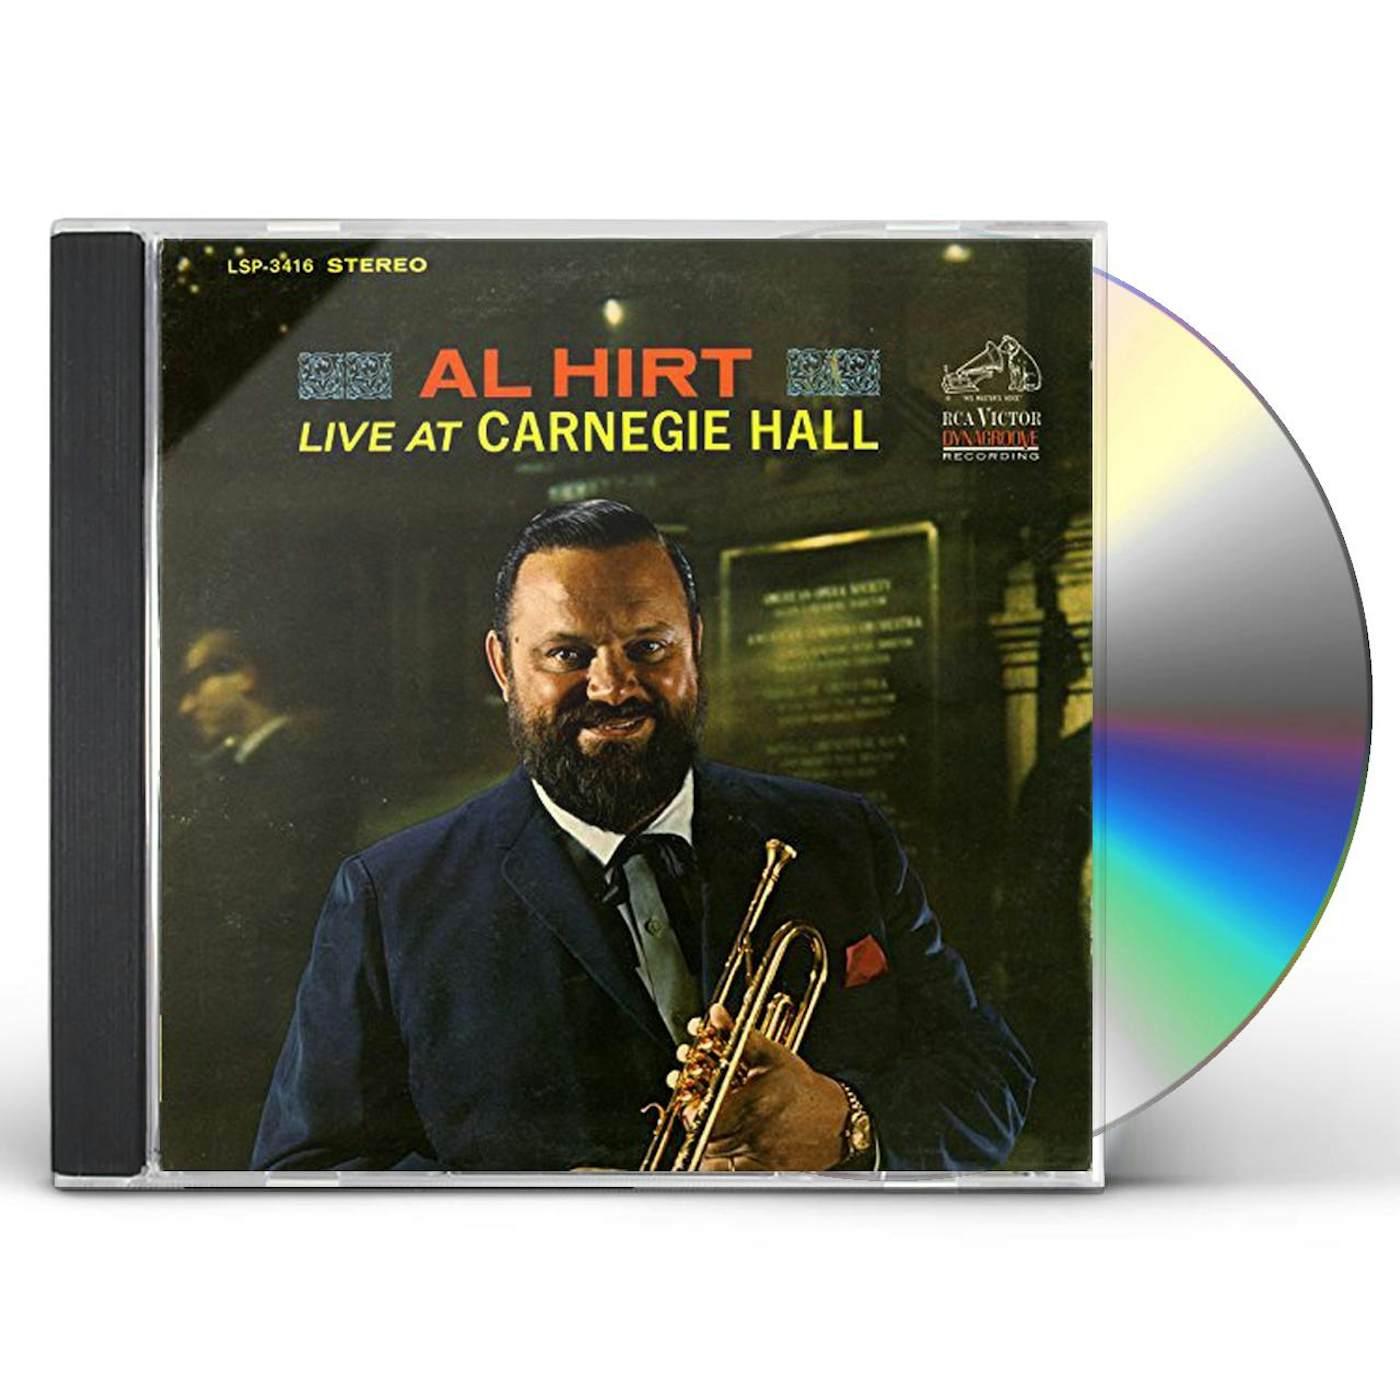 AL HIRT LIVE AT CARNEGIE HALL CD